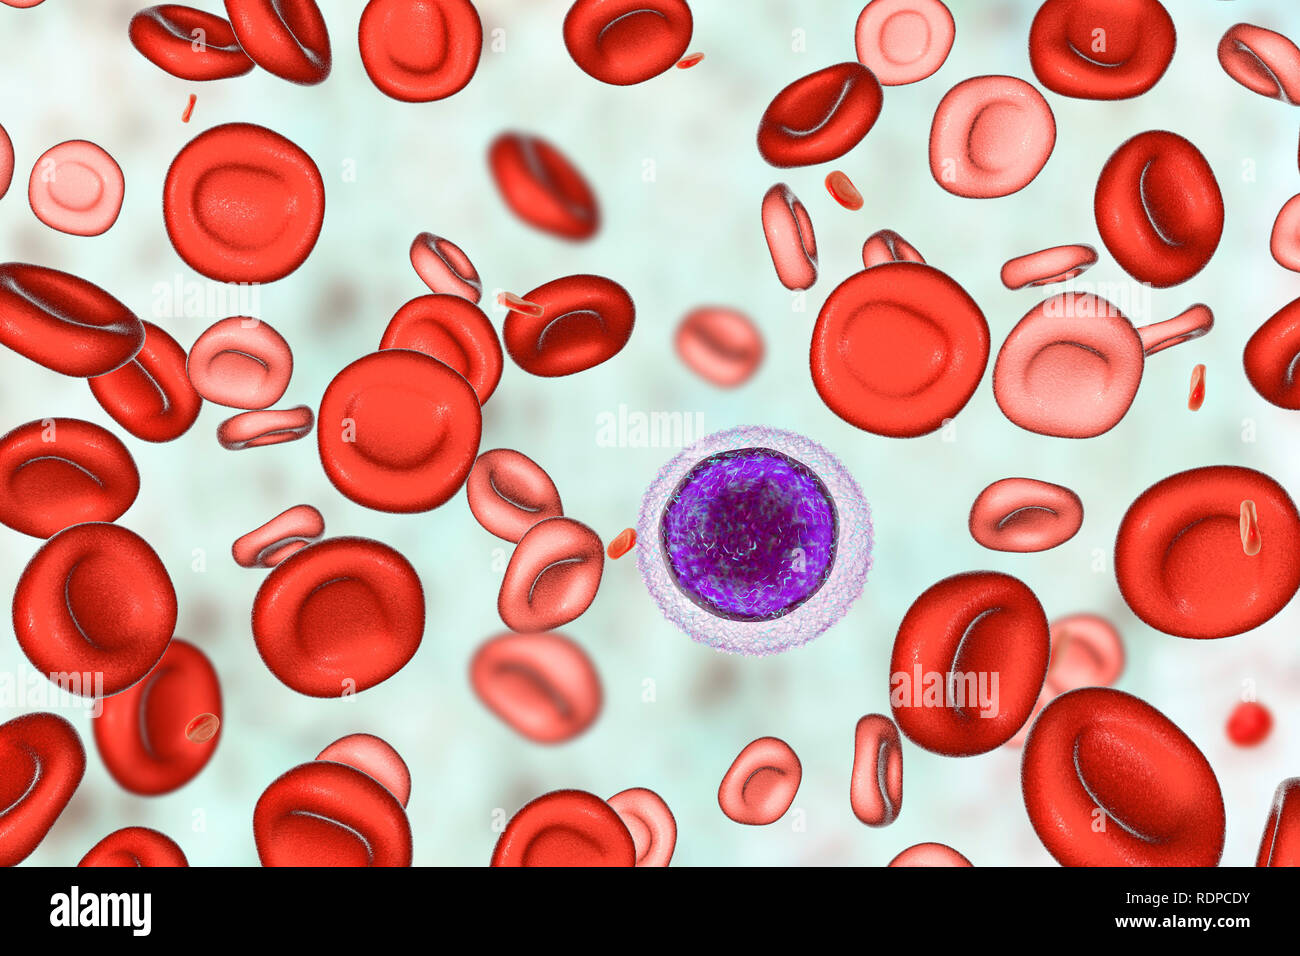 La anemia por deficiencia de hierro. Equipo ilustración mostrando la sangre  de un paciente después de hemotransfusion. Los glóbulos rojos normales son  vistos junto con hipocrómica (mancha mal) y microcítica (pequeño) de